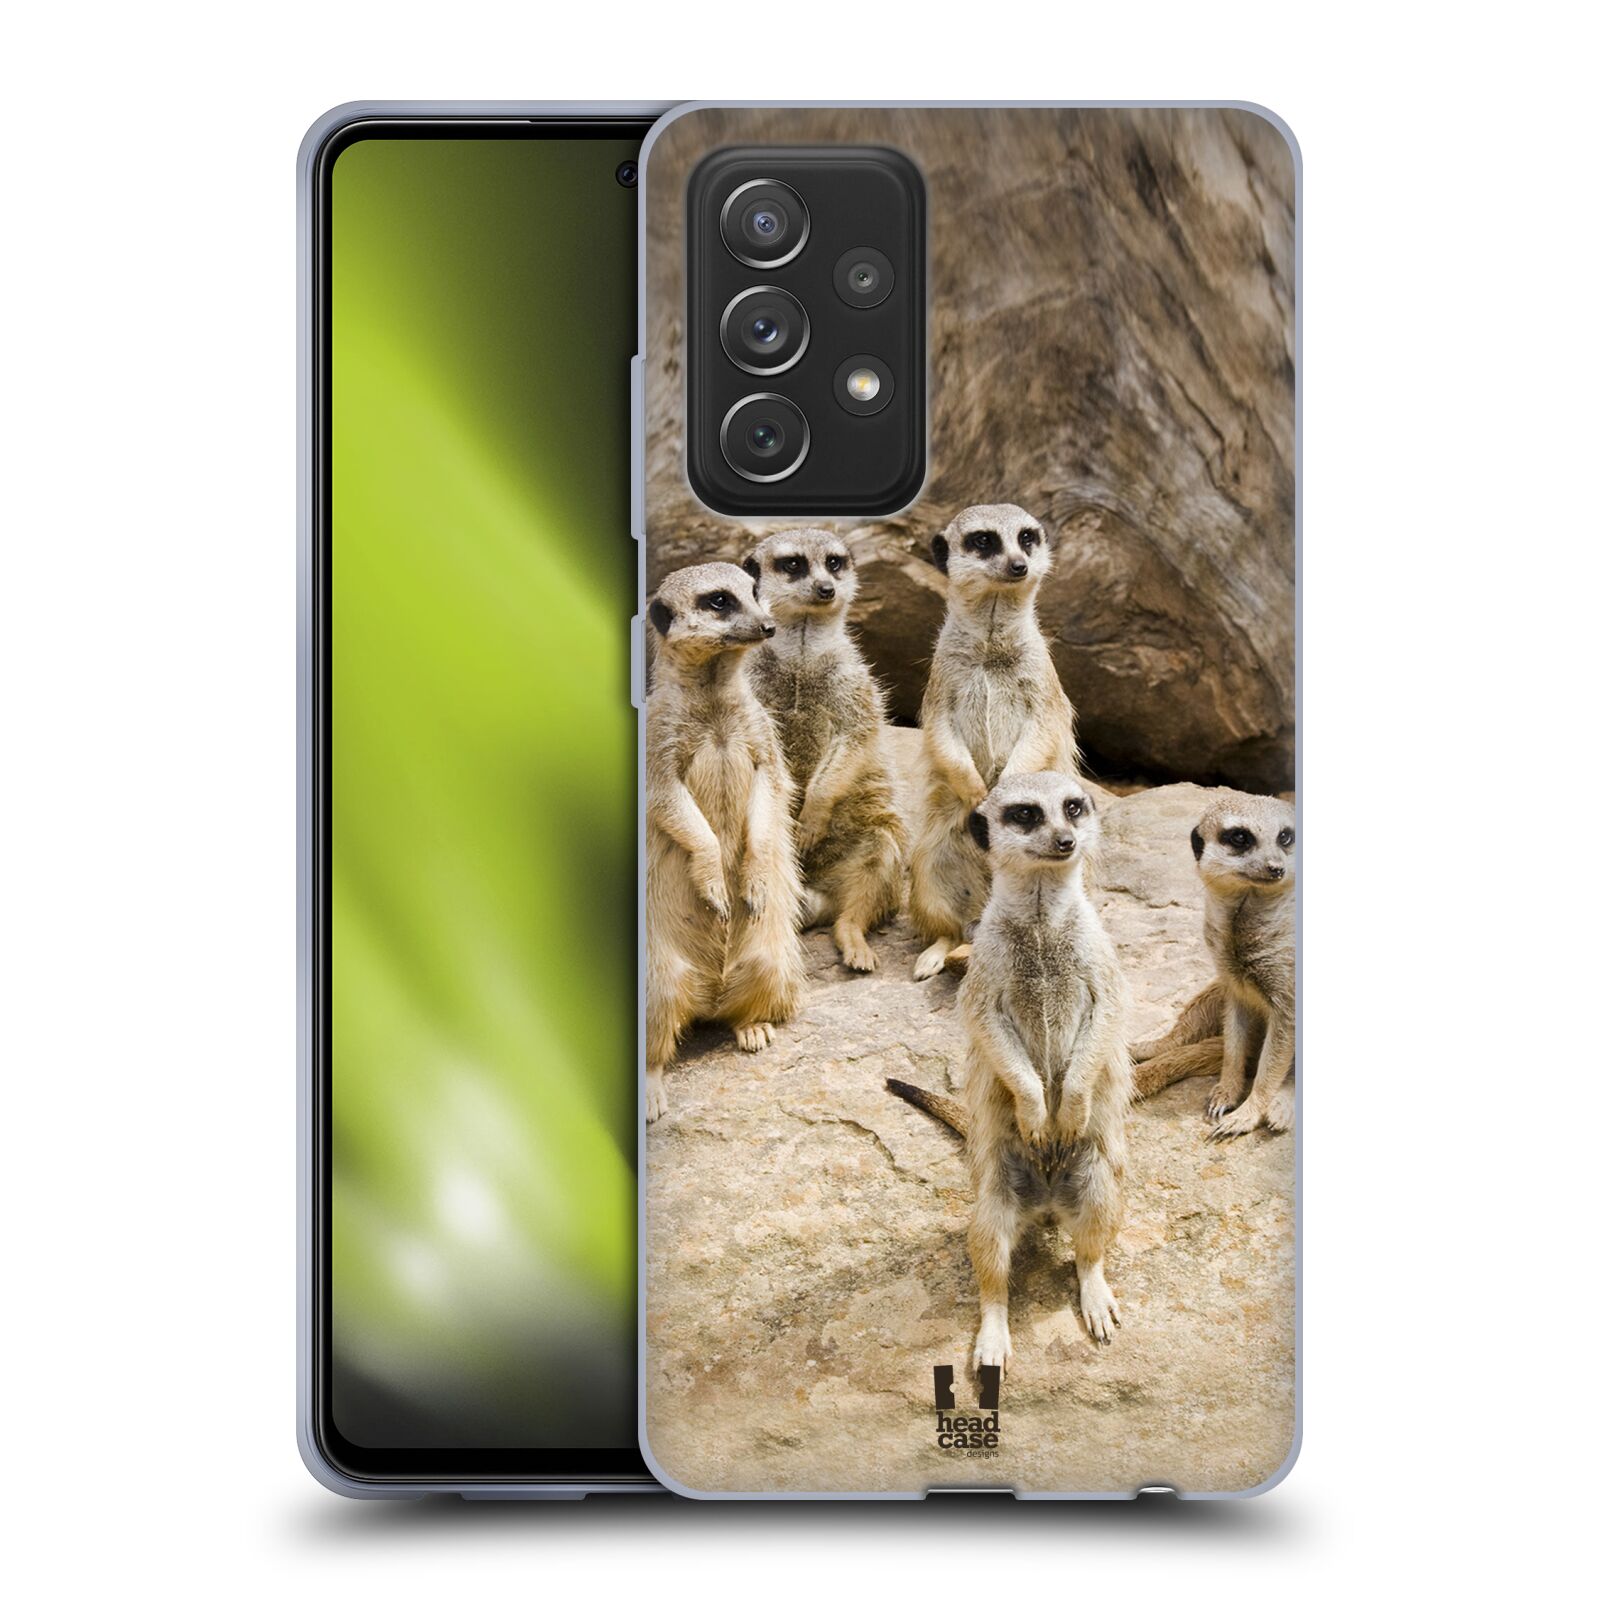 Zadní obal pro mobil Samsung Galaxy A72 / A72 5G - HEAD CASE - Svět zvířat roztomilé surikaty